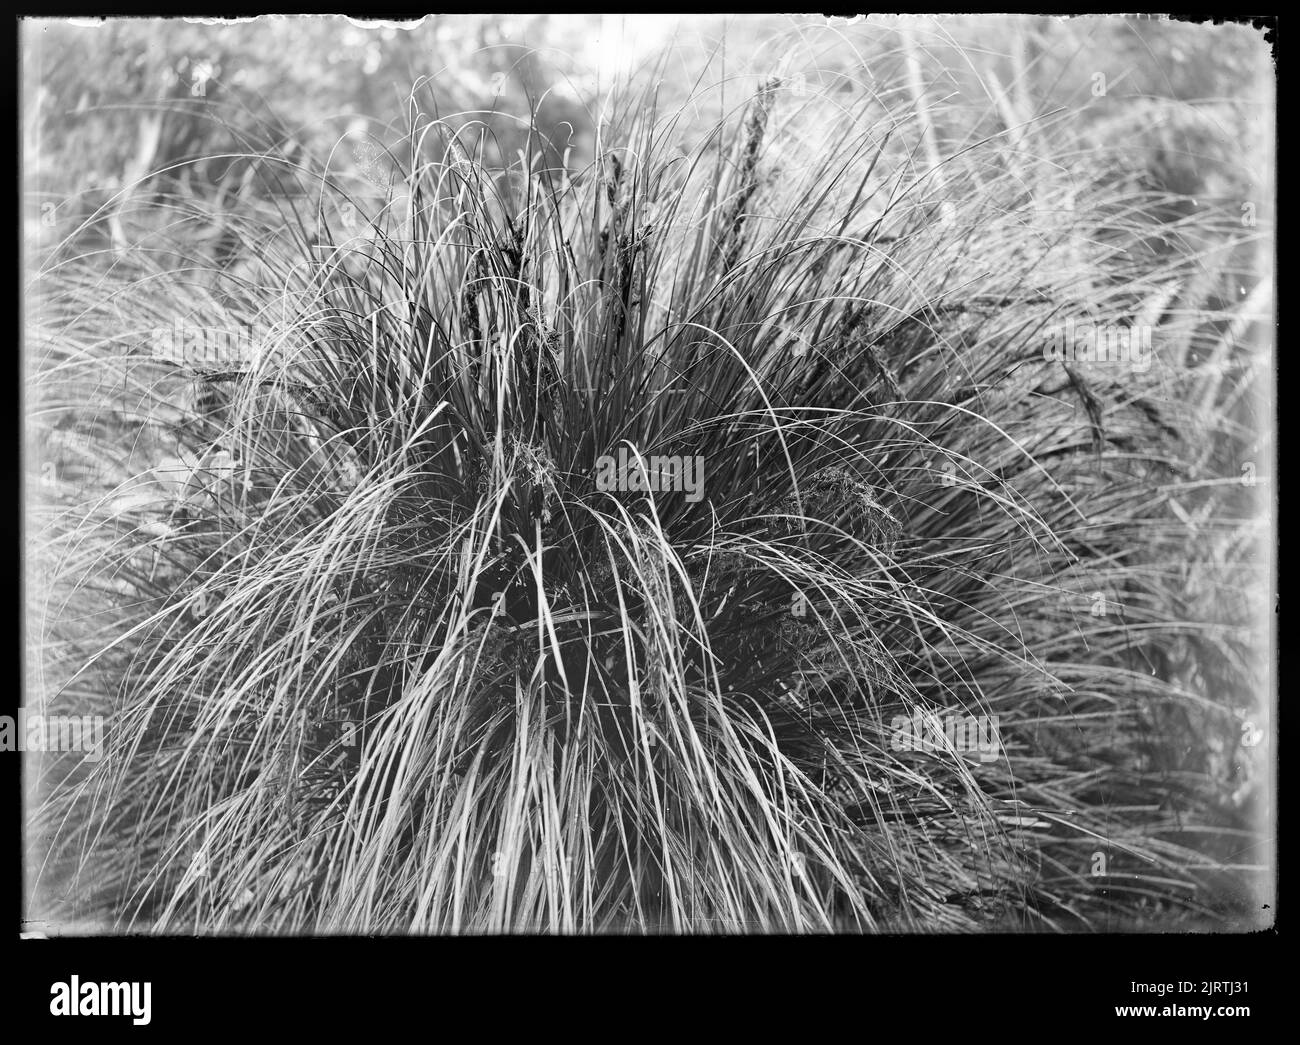 Ascesa botanica del Monte Waiopehu : 6 febbraio 1928-7 febbraio 1928, 06 febbraio 1928-07 febbraio 1928, di Leslie Adkin. Dono della tenuta di famiglia G. L. Adkin, 1964. Foto Stock